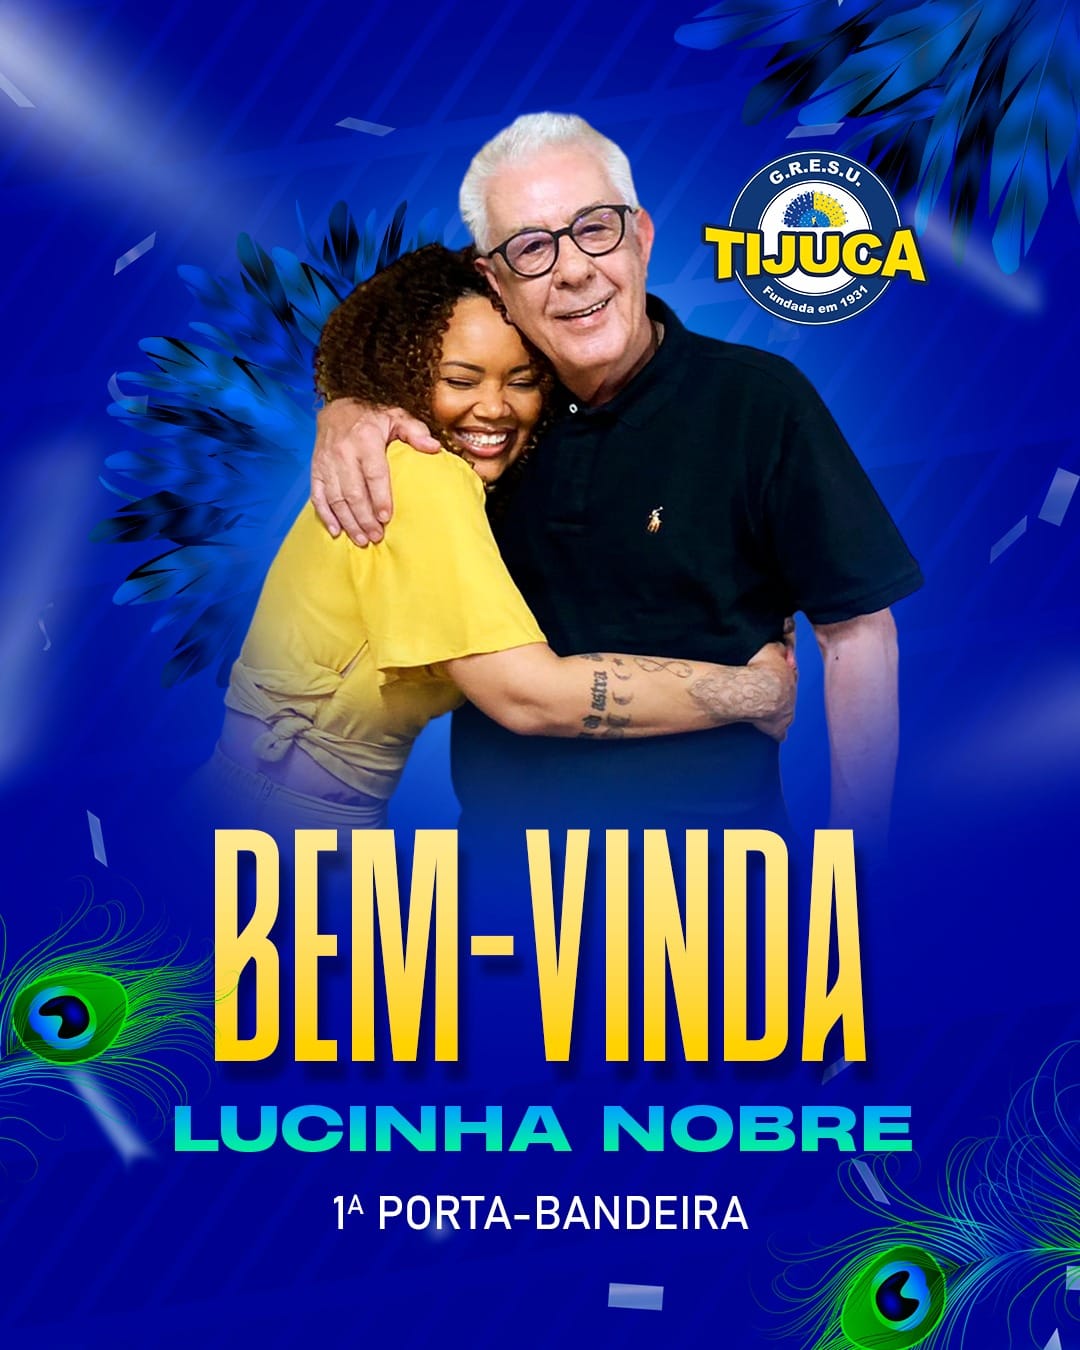 Lucinha estreou na Tijuca em 2001 e até 2009 defendeu o pavilhão tijucano.